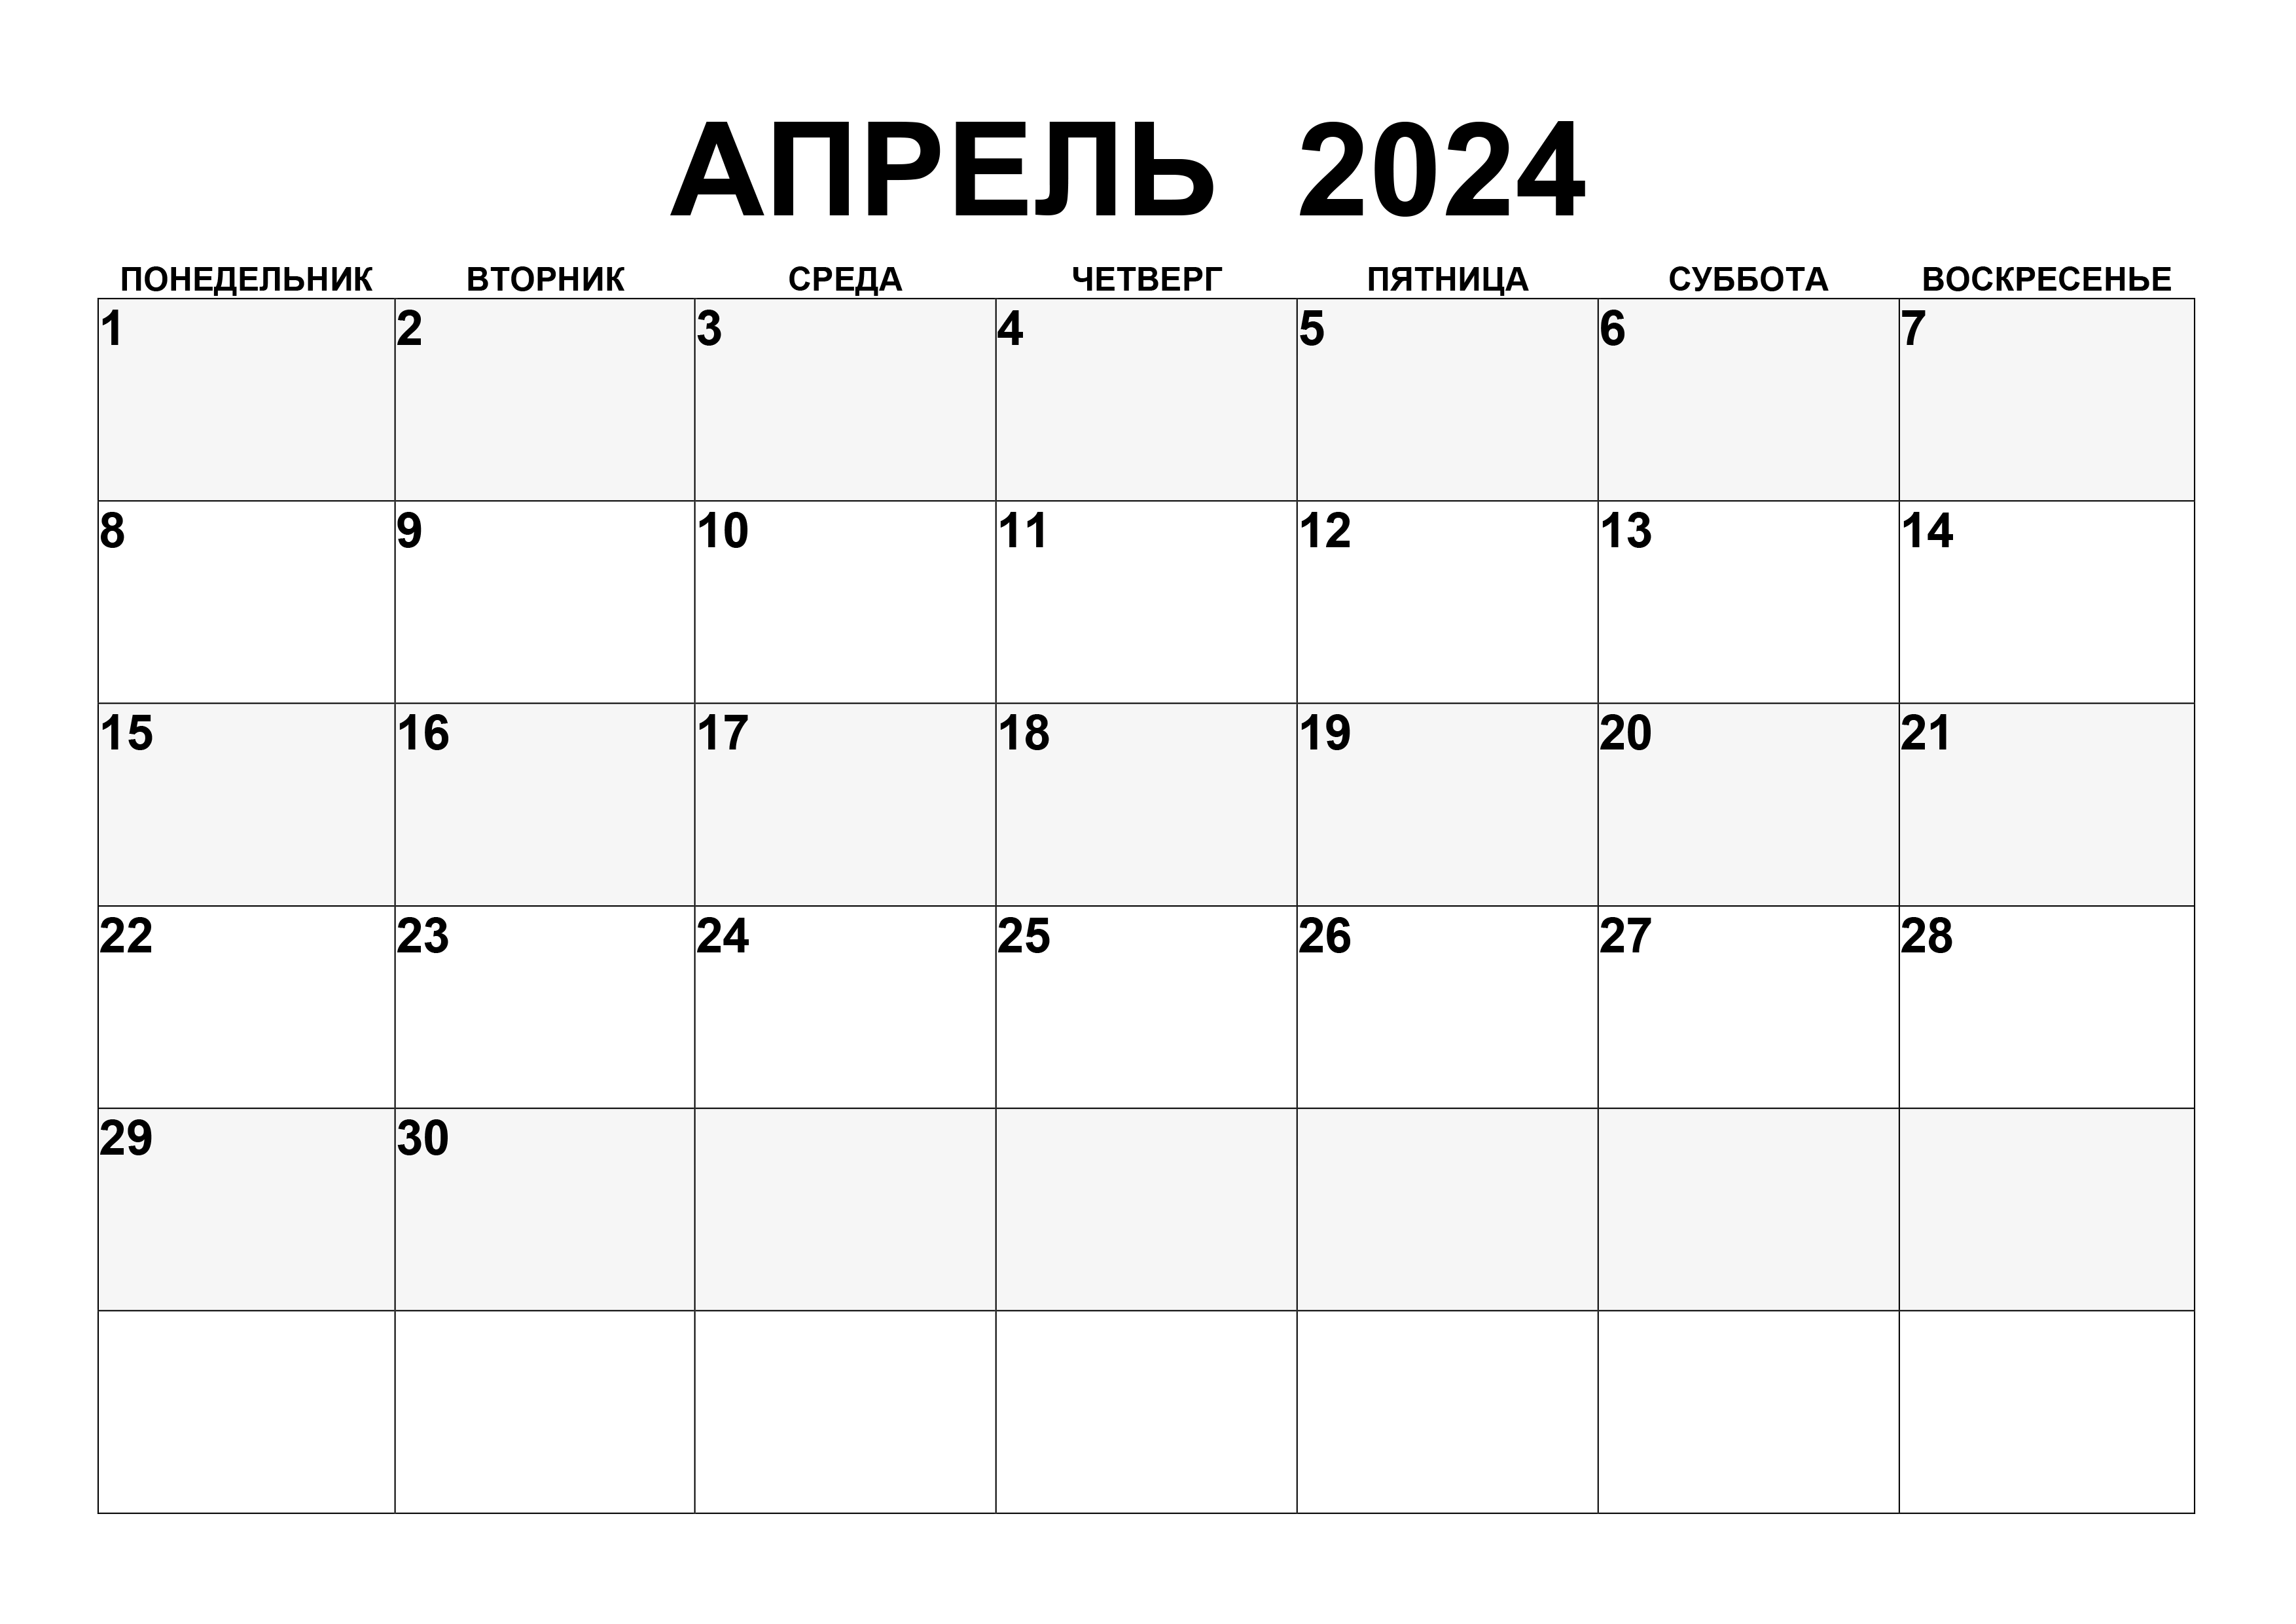 Новая луна в апреле 2024. Календарь апрель 2024. Календарь на апр 2024. Rfktylfhm YF fghktm 2024.